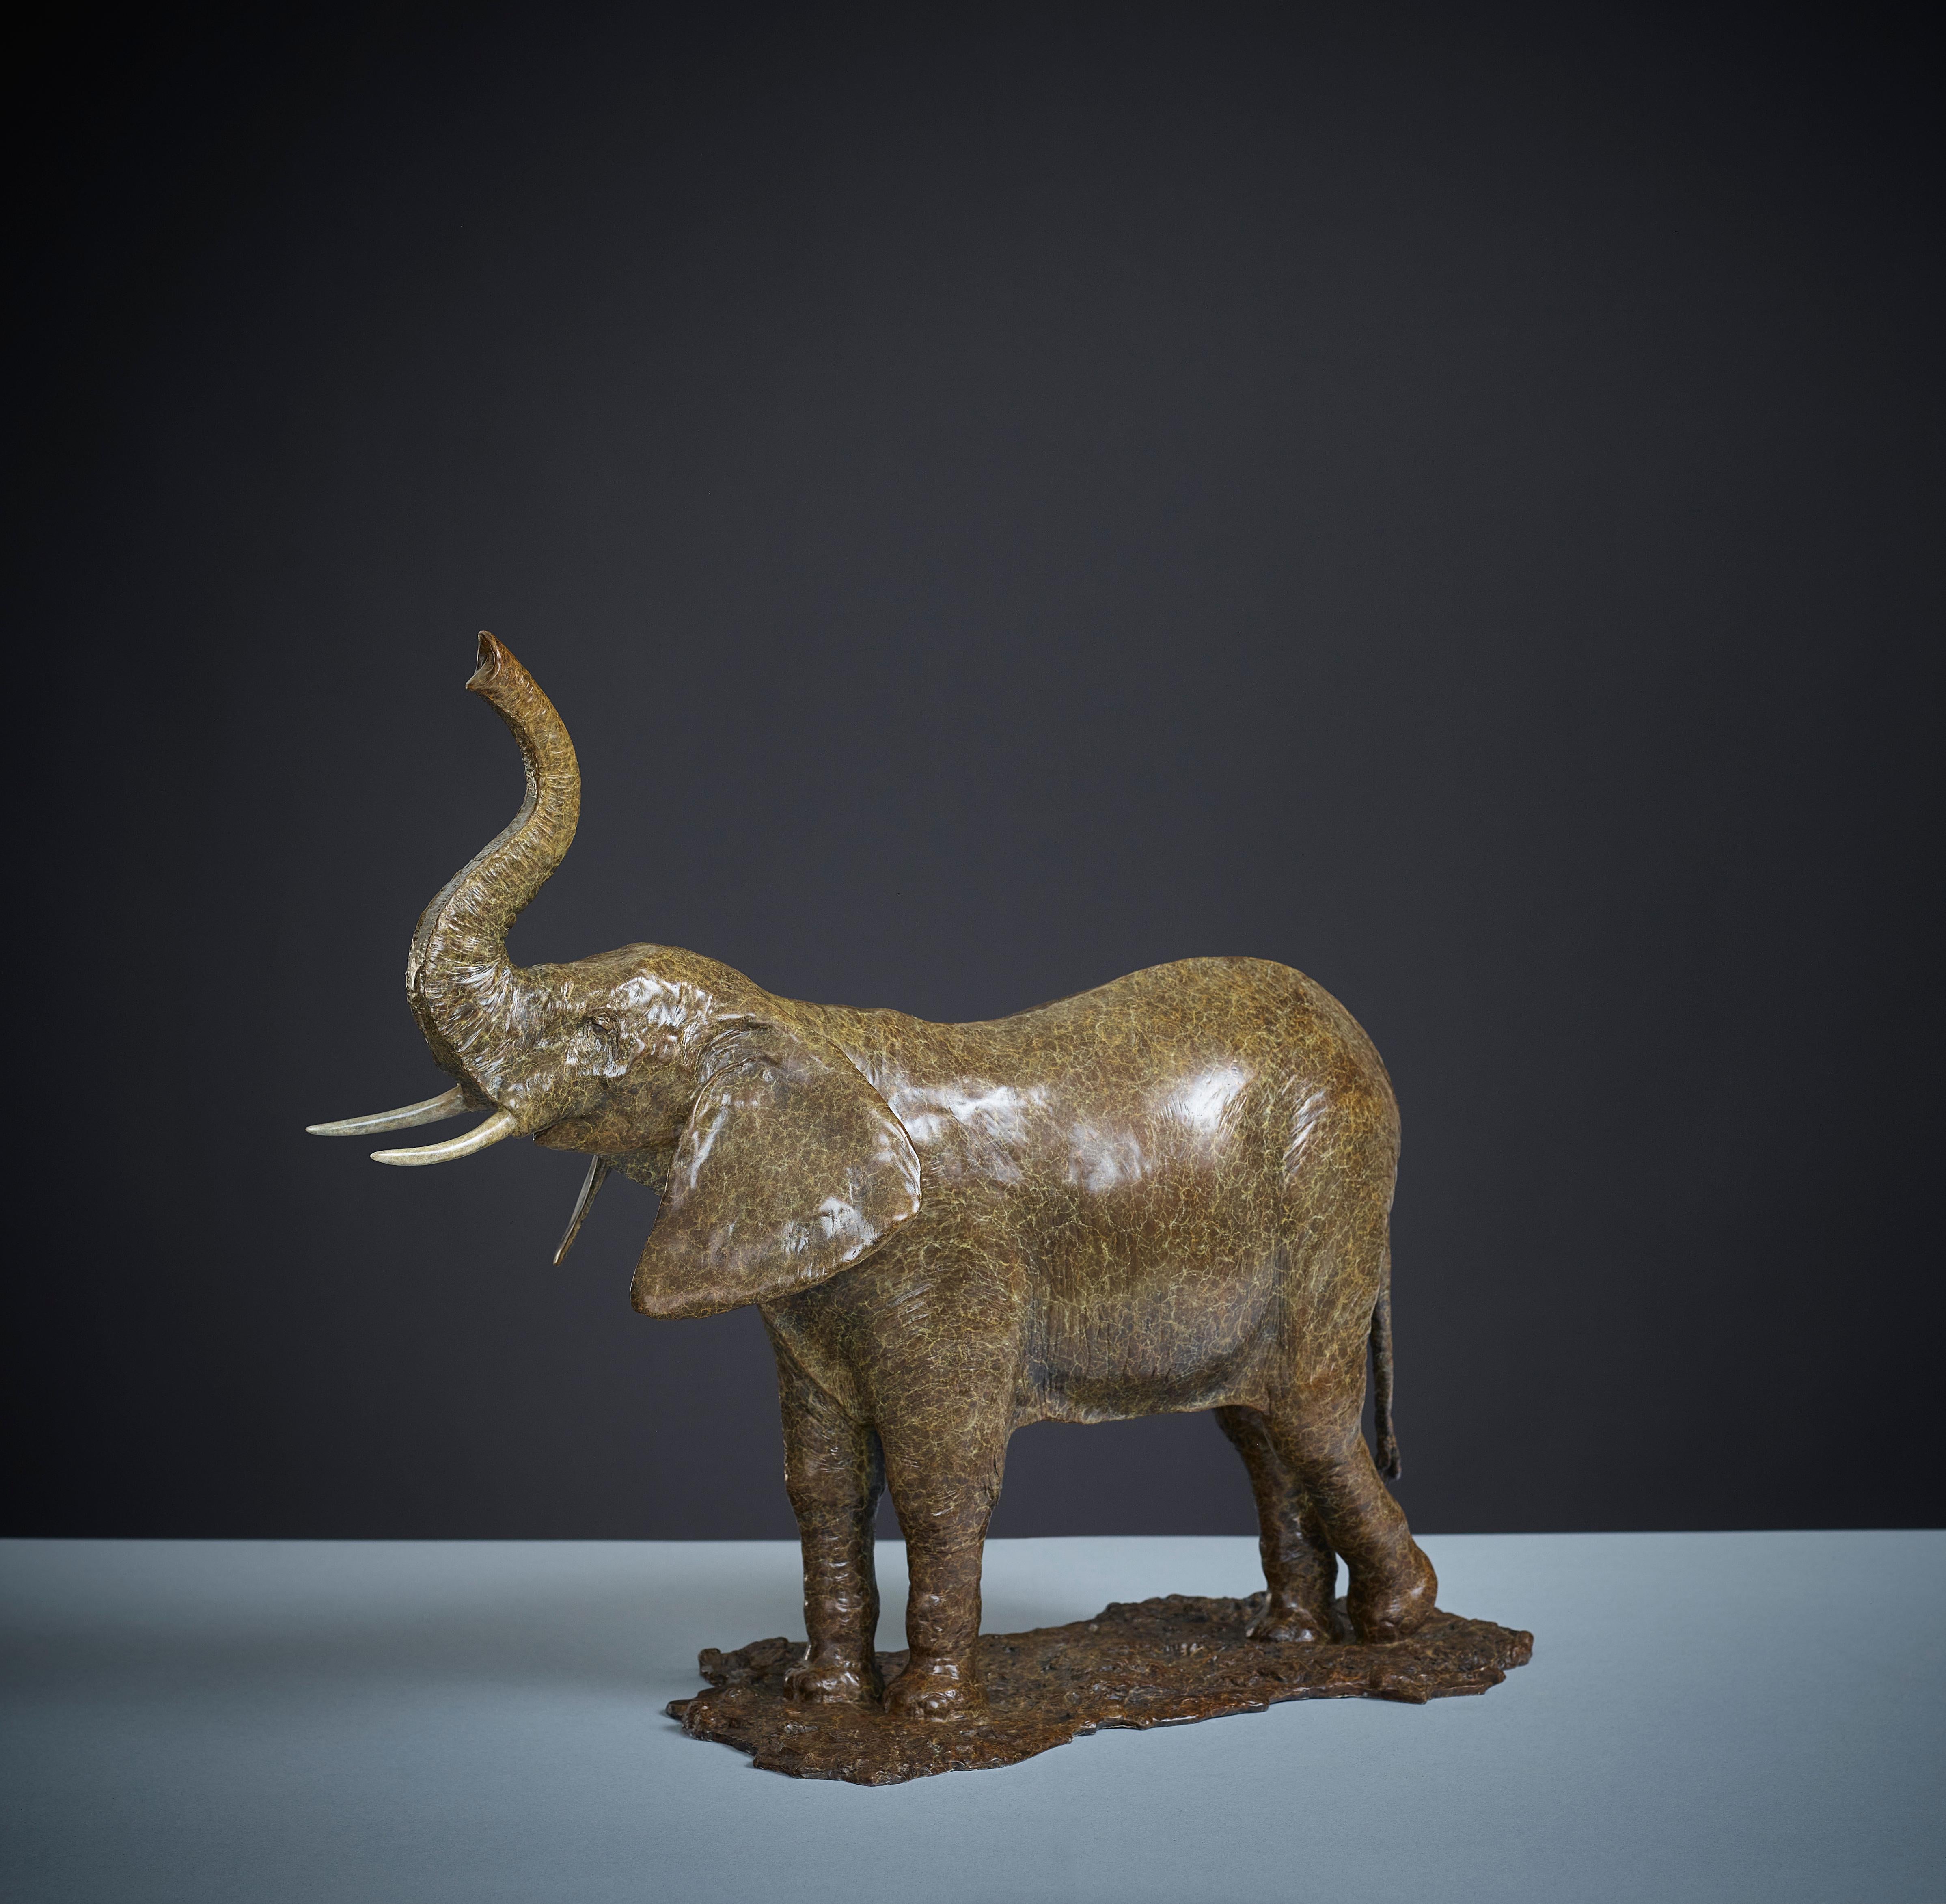 l'éléphant de Tobias Martin est une sculpture animalière en bronze massif.

Tobias Martin est né en 1972 dans le Wiltshire, à 12 miles de Stonehenge. Influencées par son éducation rurale idyllique et les forces de la nature et de la magie qui ont